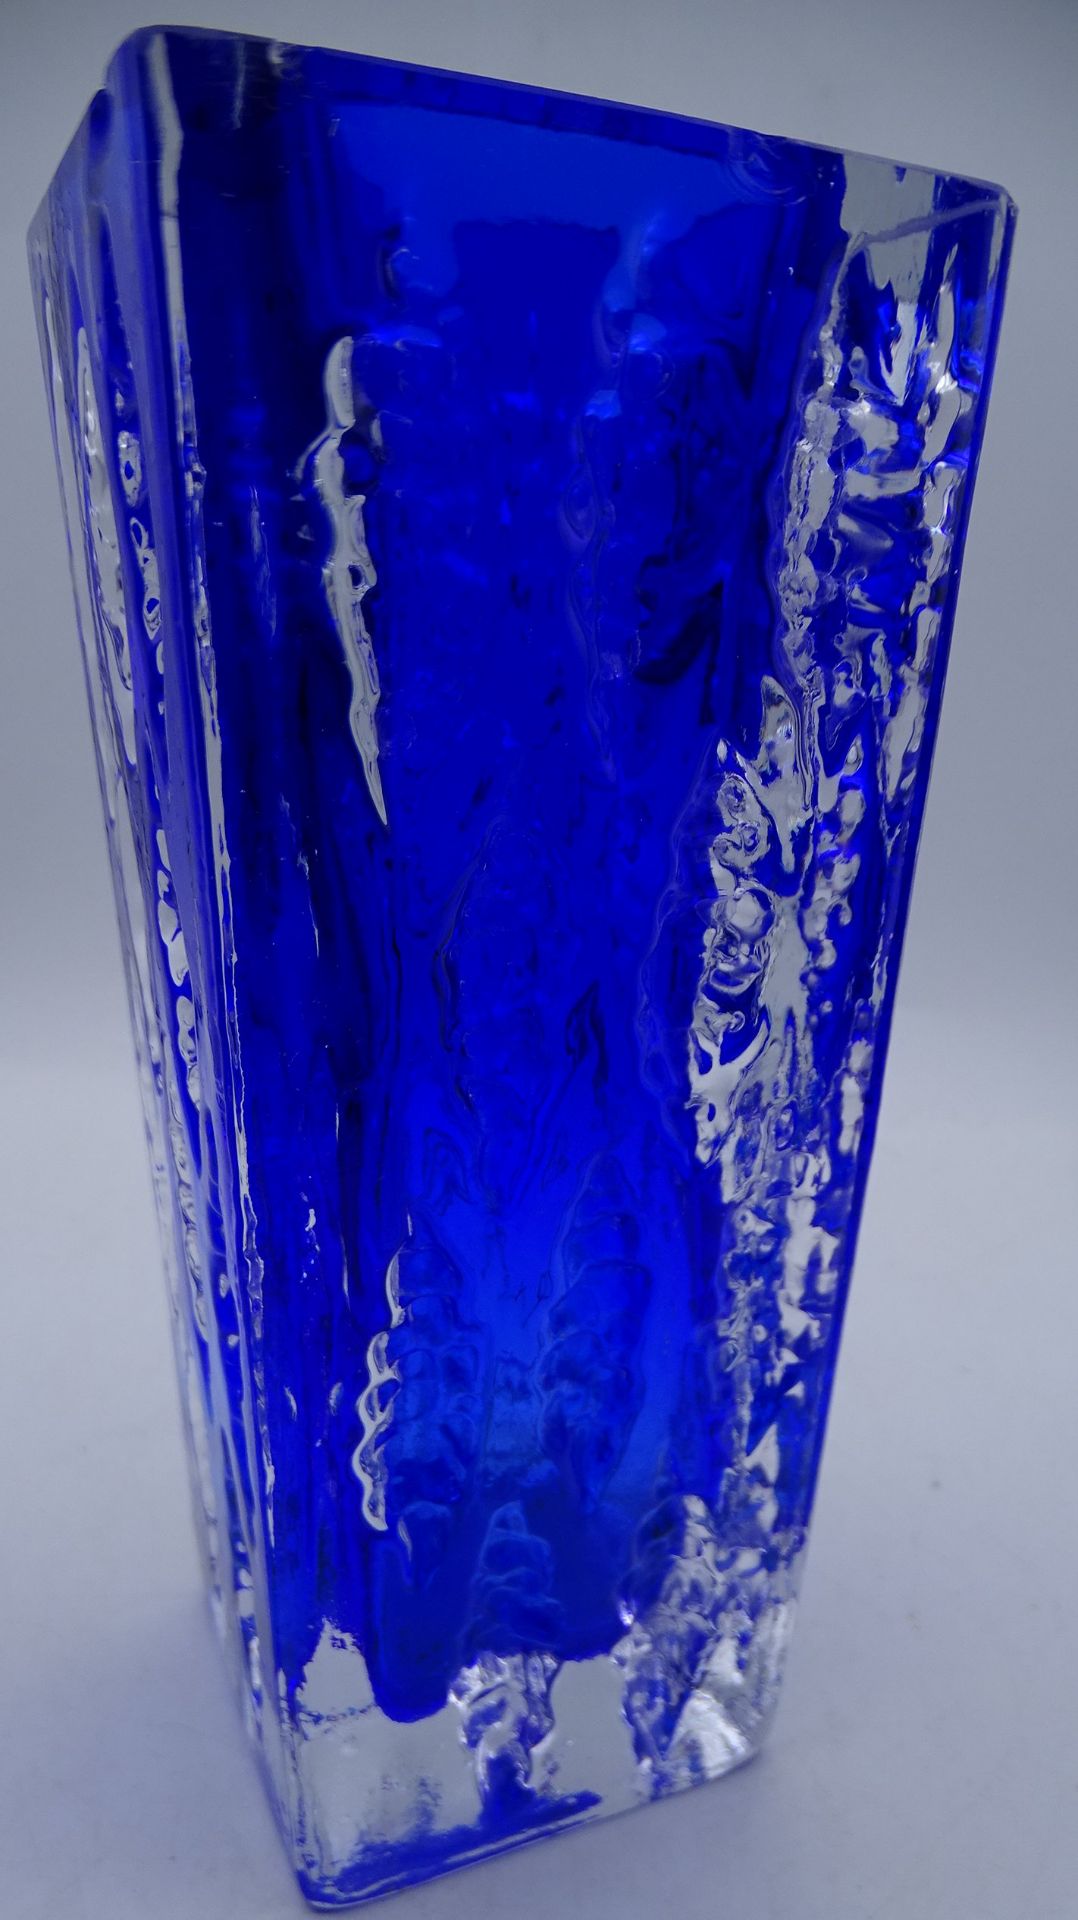 blau/klare  dicke Kunstglasvase, H-18 cm, 8x8 cm, Rand oben mehrere kl. Abplatzer0 - Bild 4 aus 5